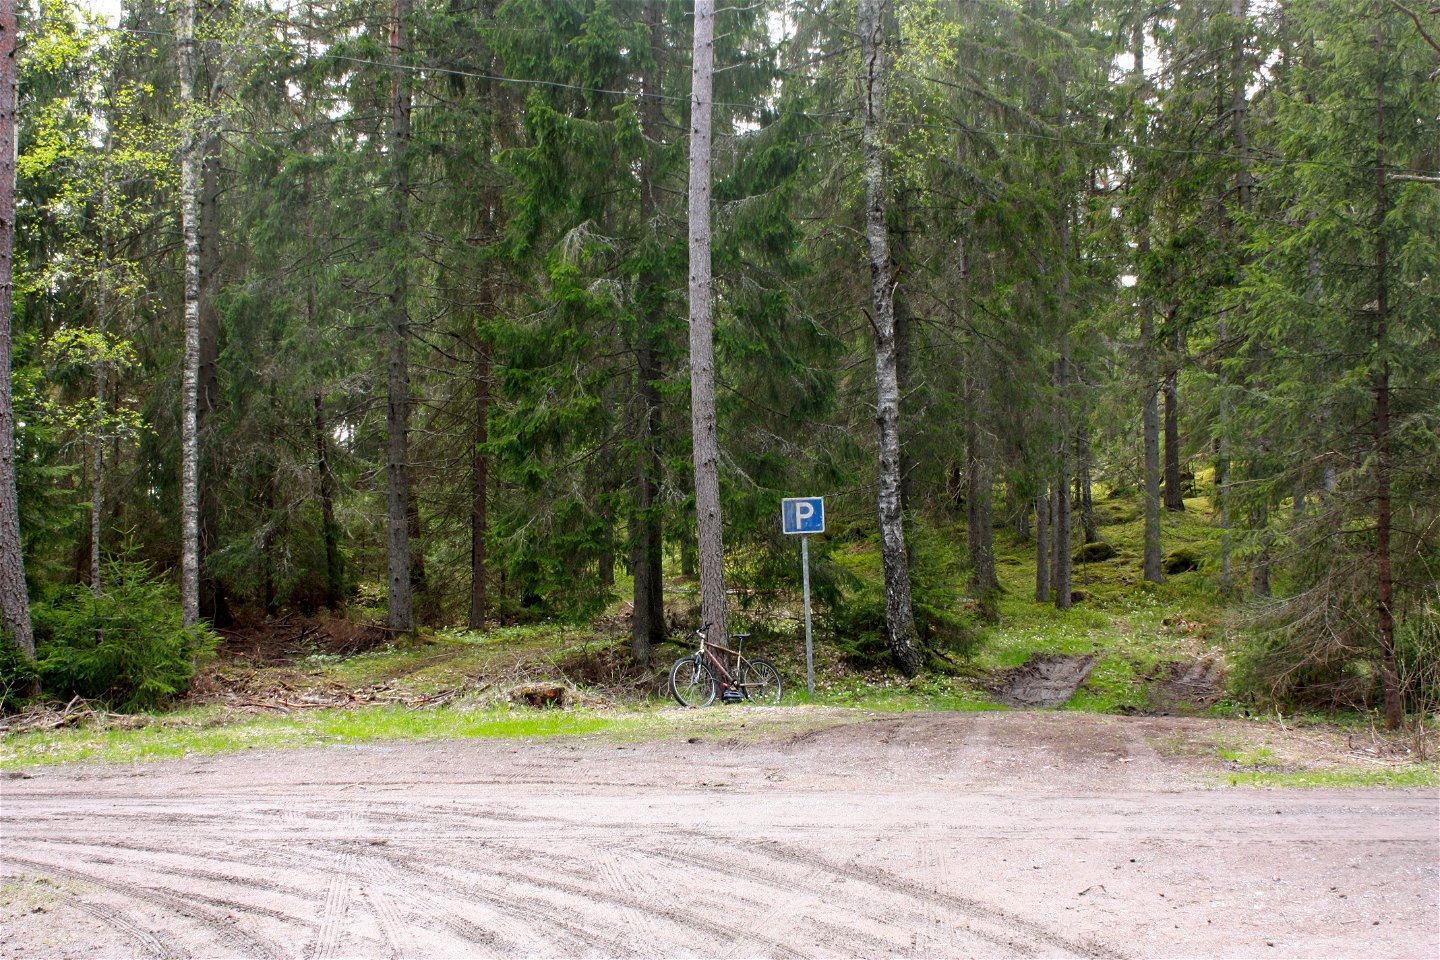 Vid en skogskant står en parkeringsskylt framför en liten, något lerig parkeringsplats. En cykel står lutad mot ett träd vid parkeringsskylten.